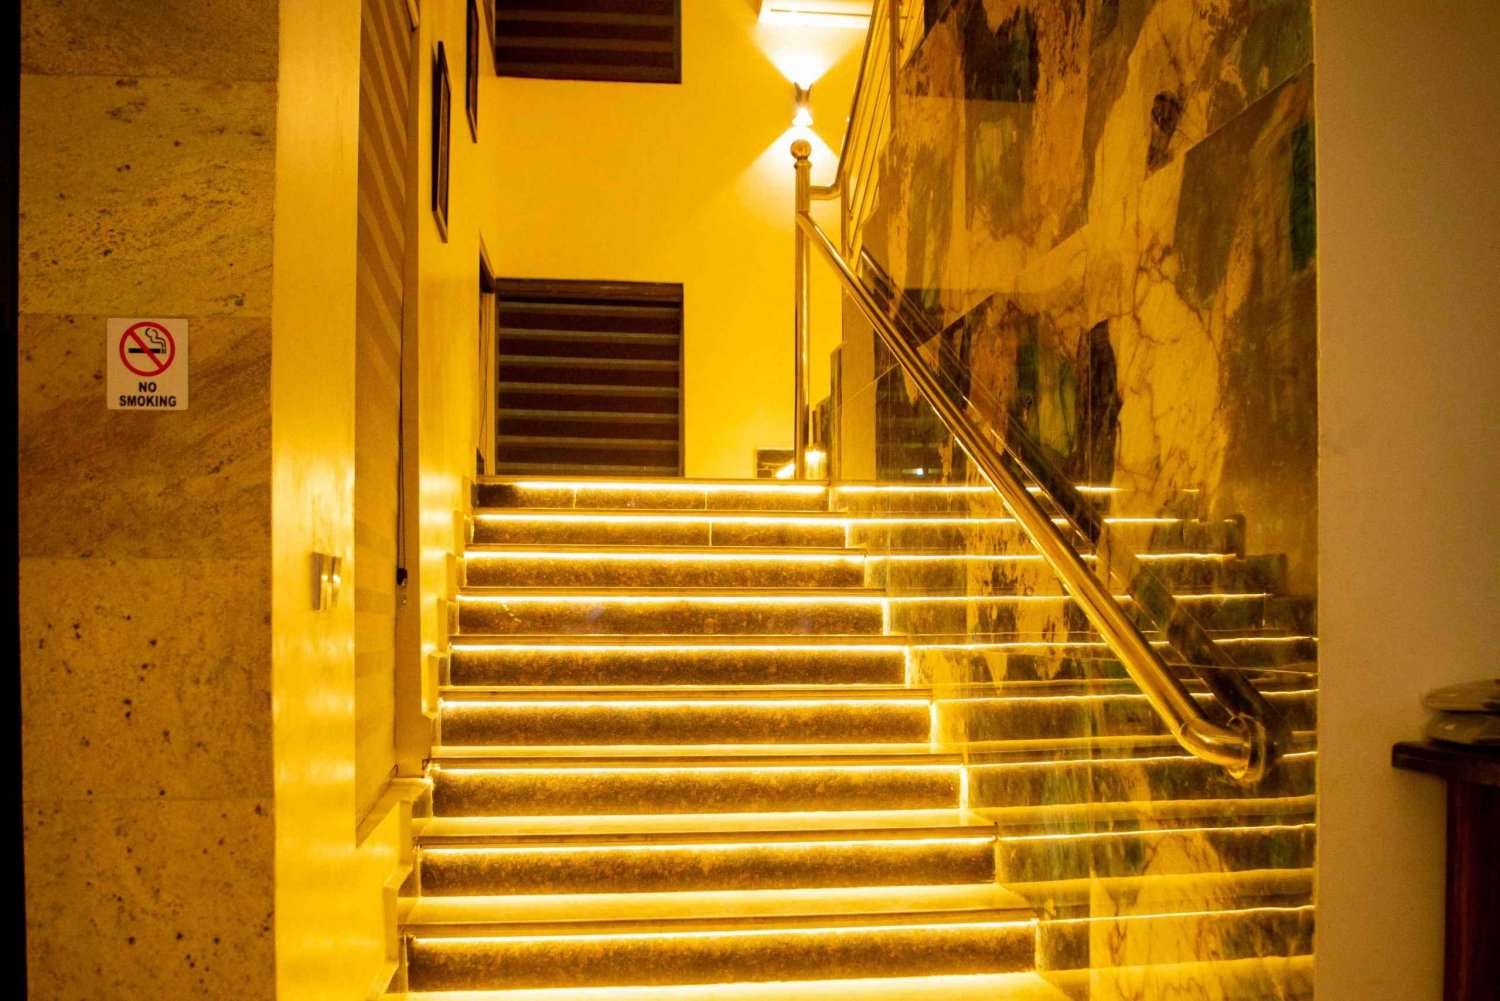 'Rosmohr Gold Hotel: Luksuriøs flugt'